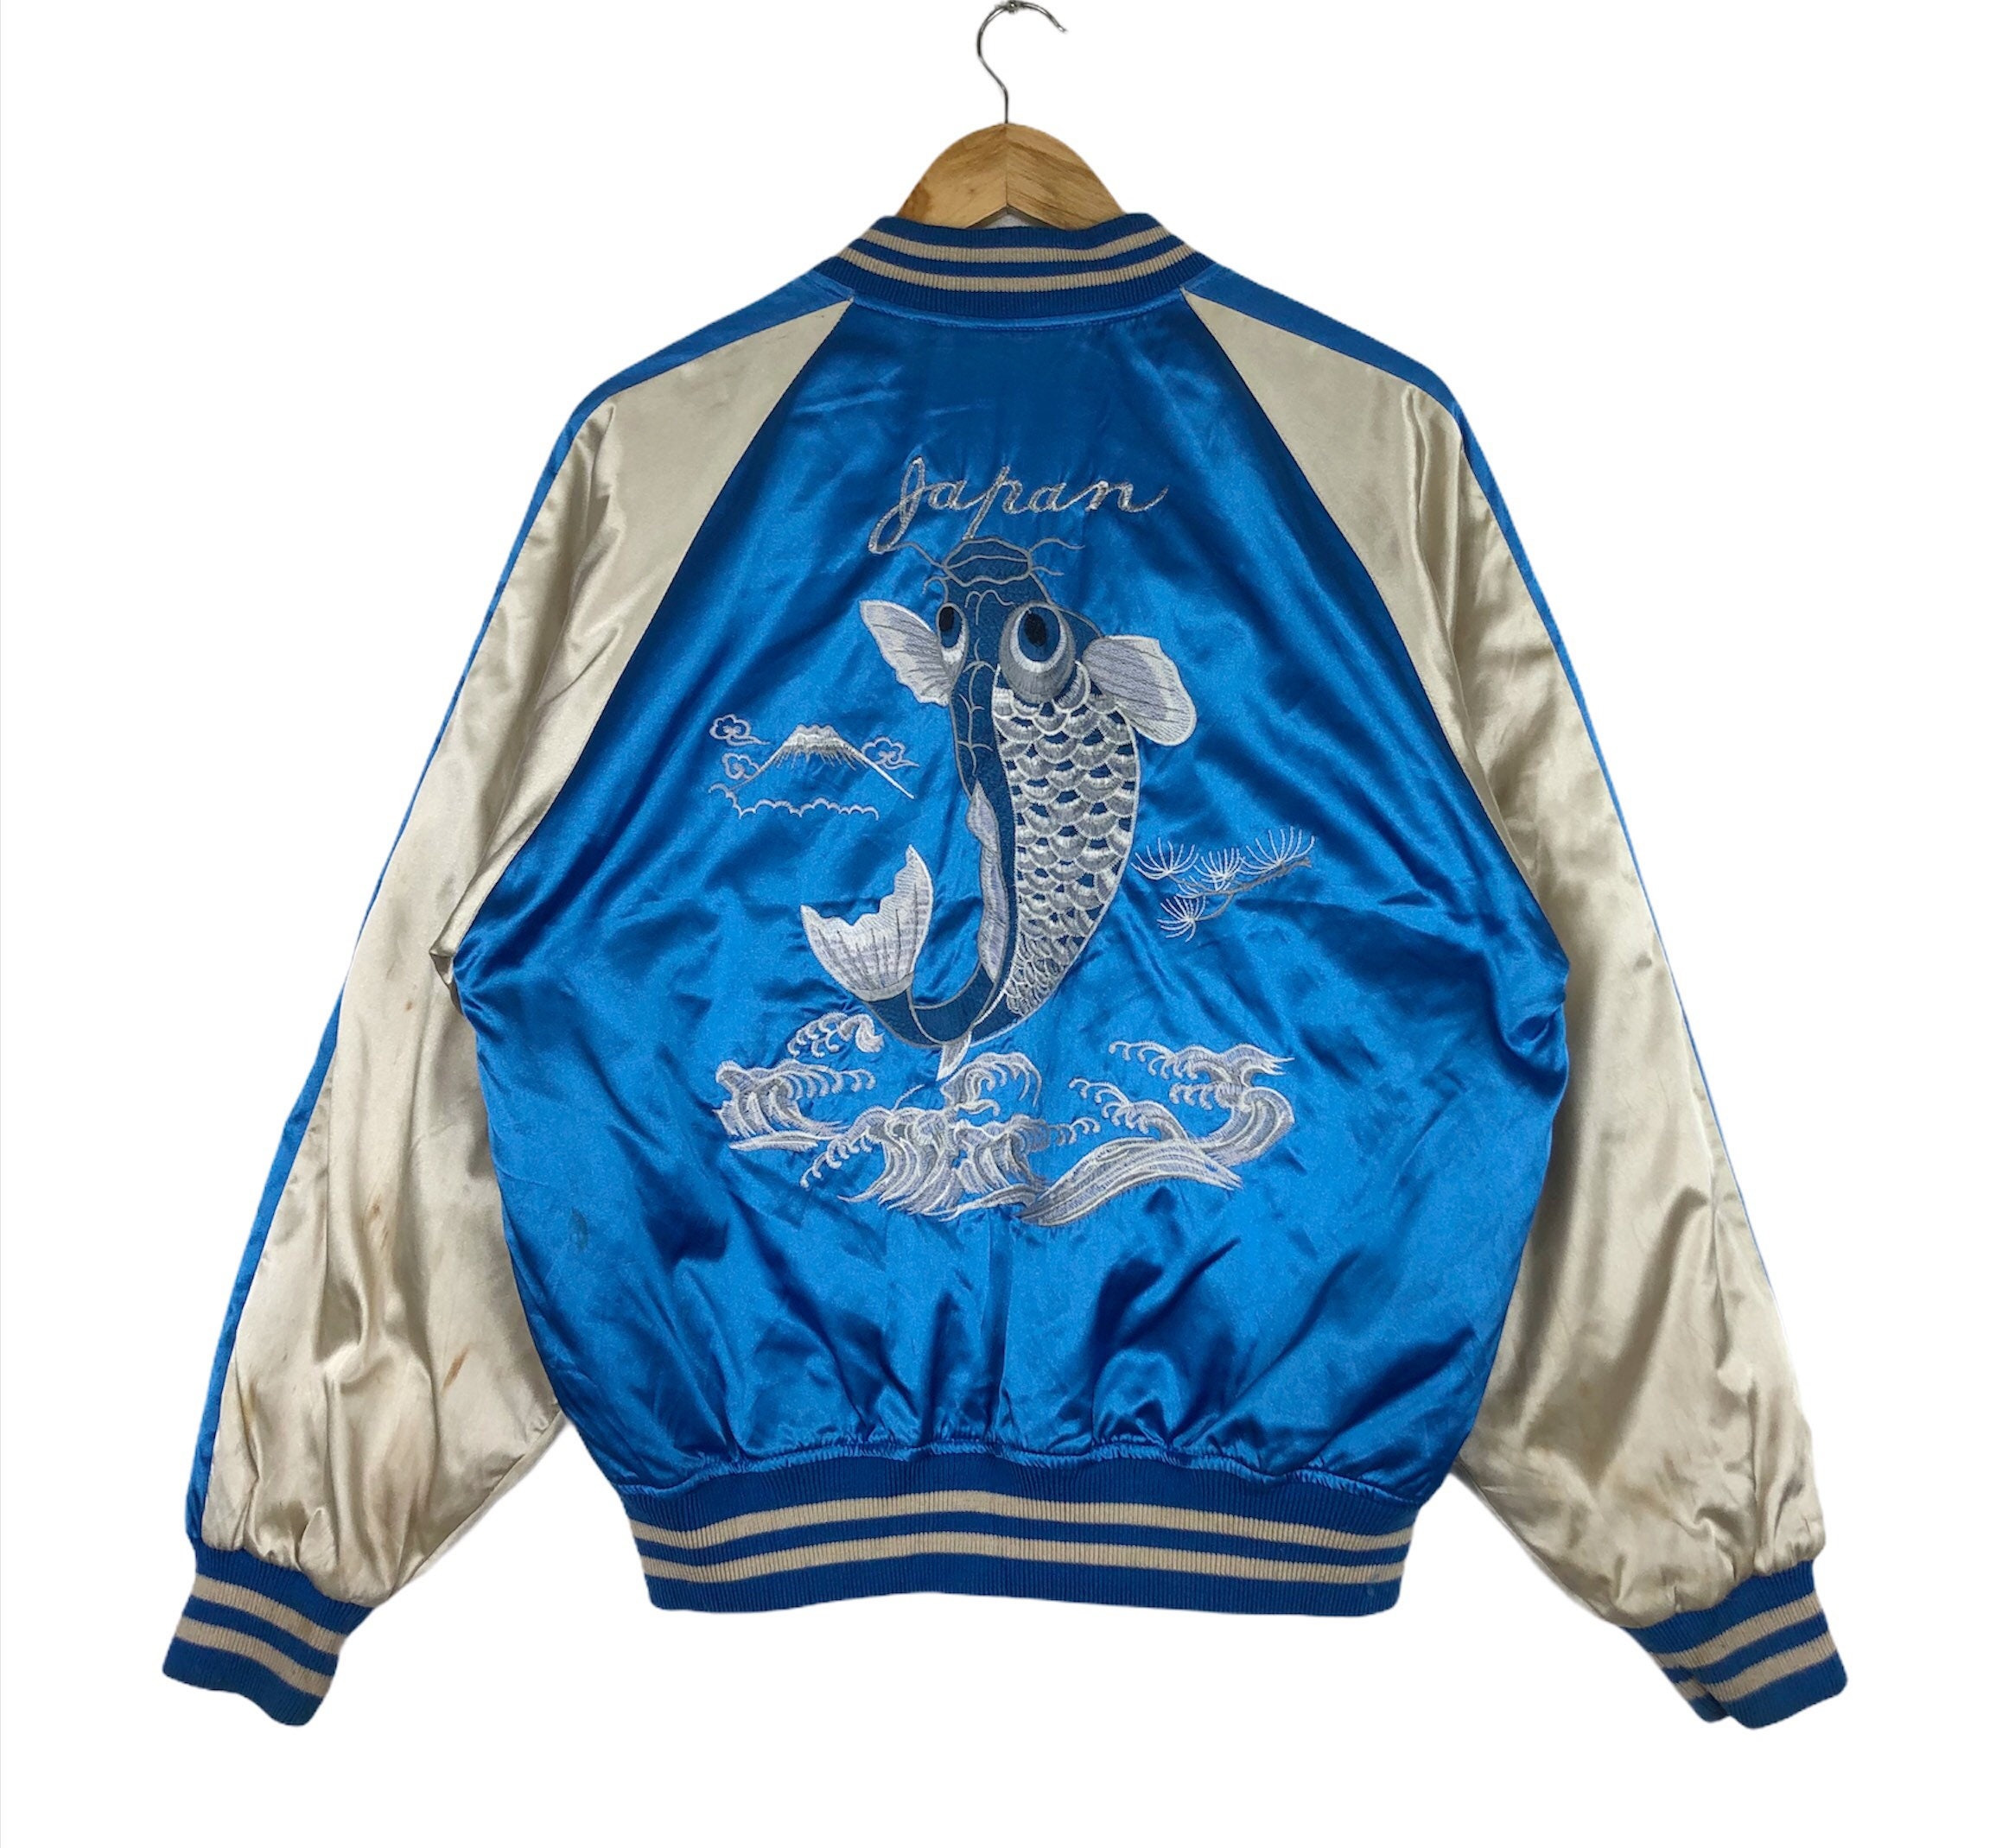 SUKAJAN Hoshihime Koi Fish Jacket Japanese Souvenir Fighter